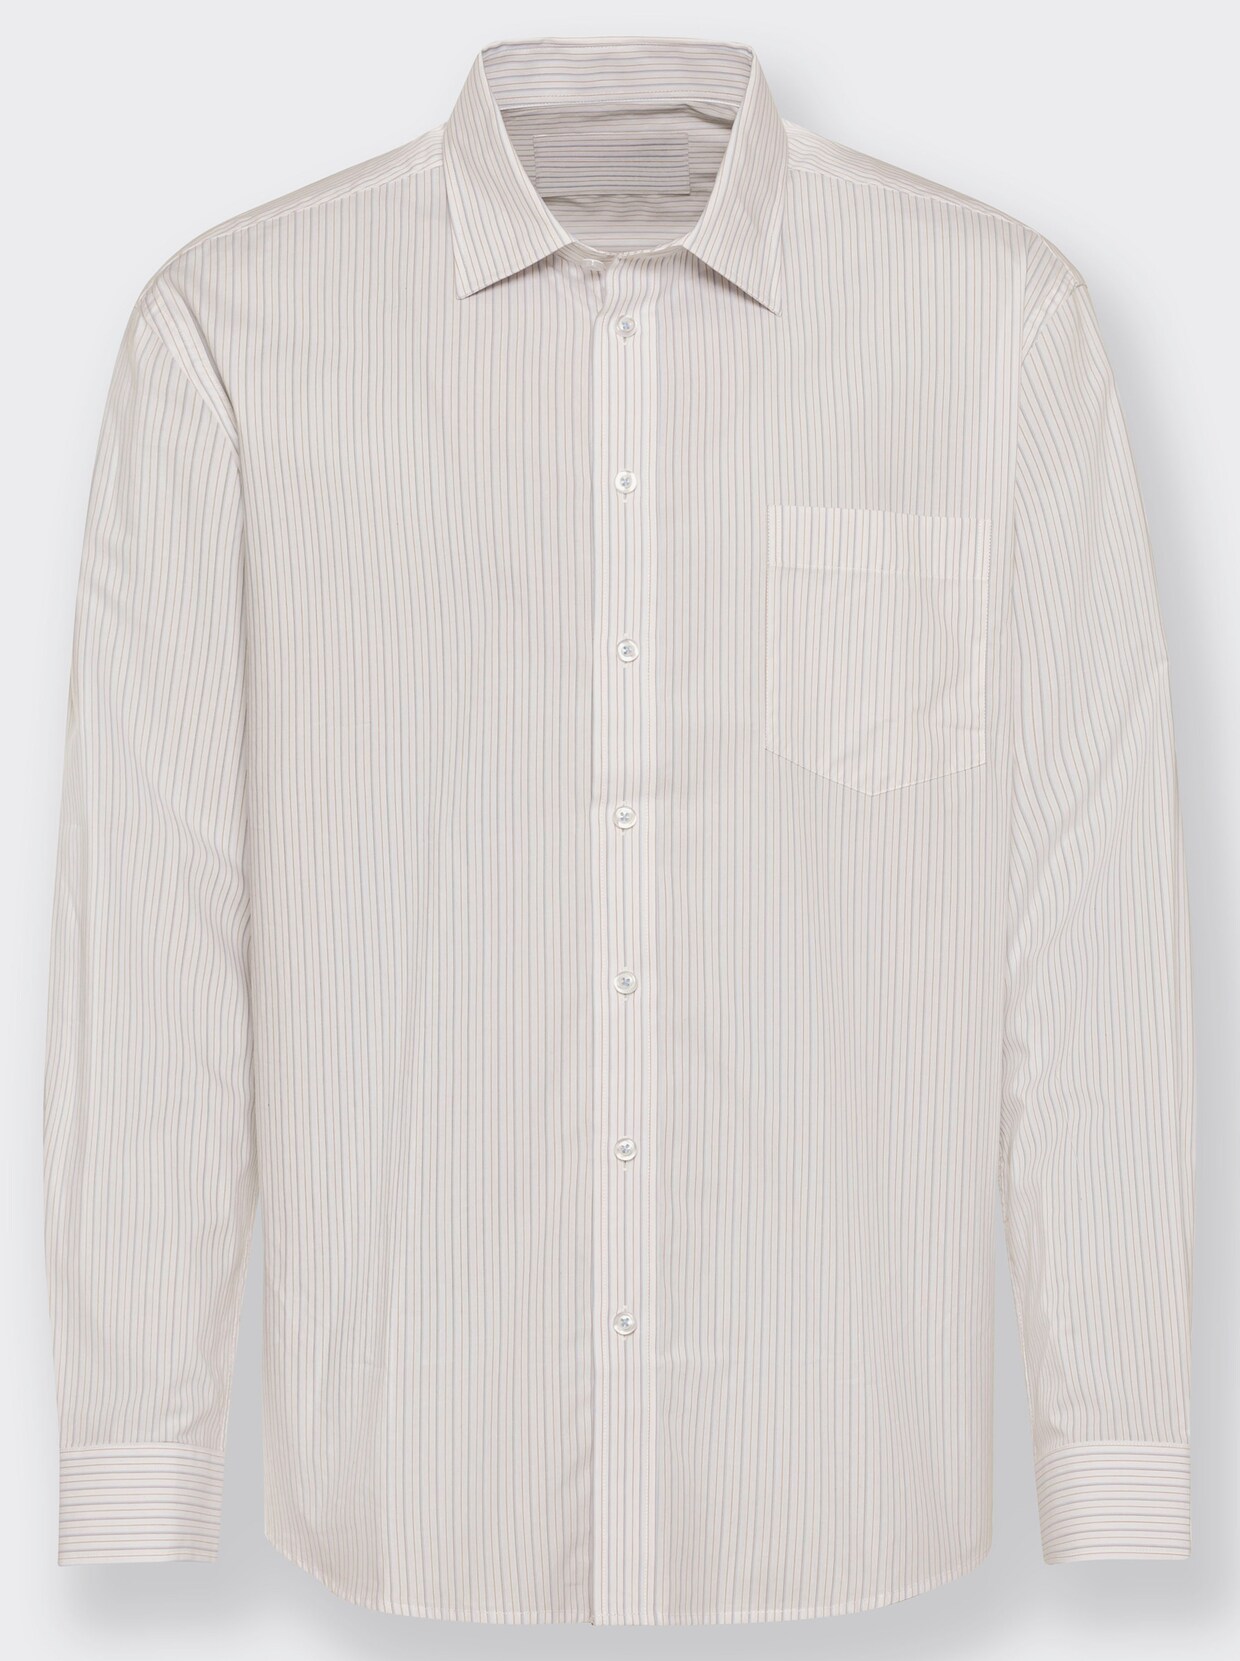 Marco Donati Hemd met lange mouwen - lichtblauw/wit gestreept